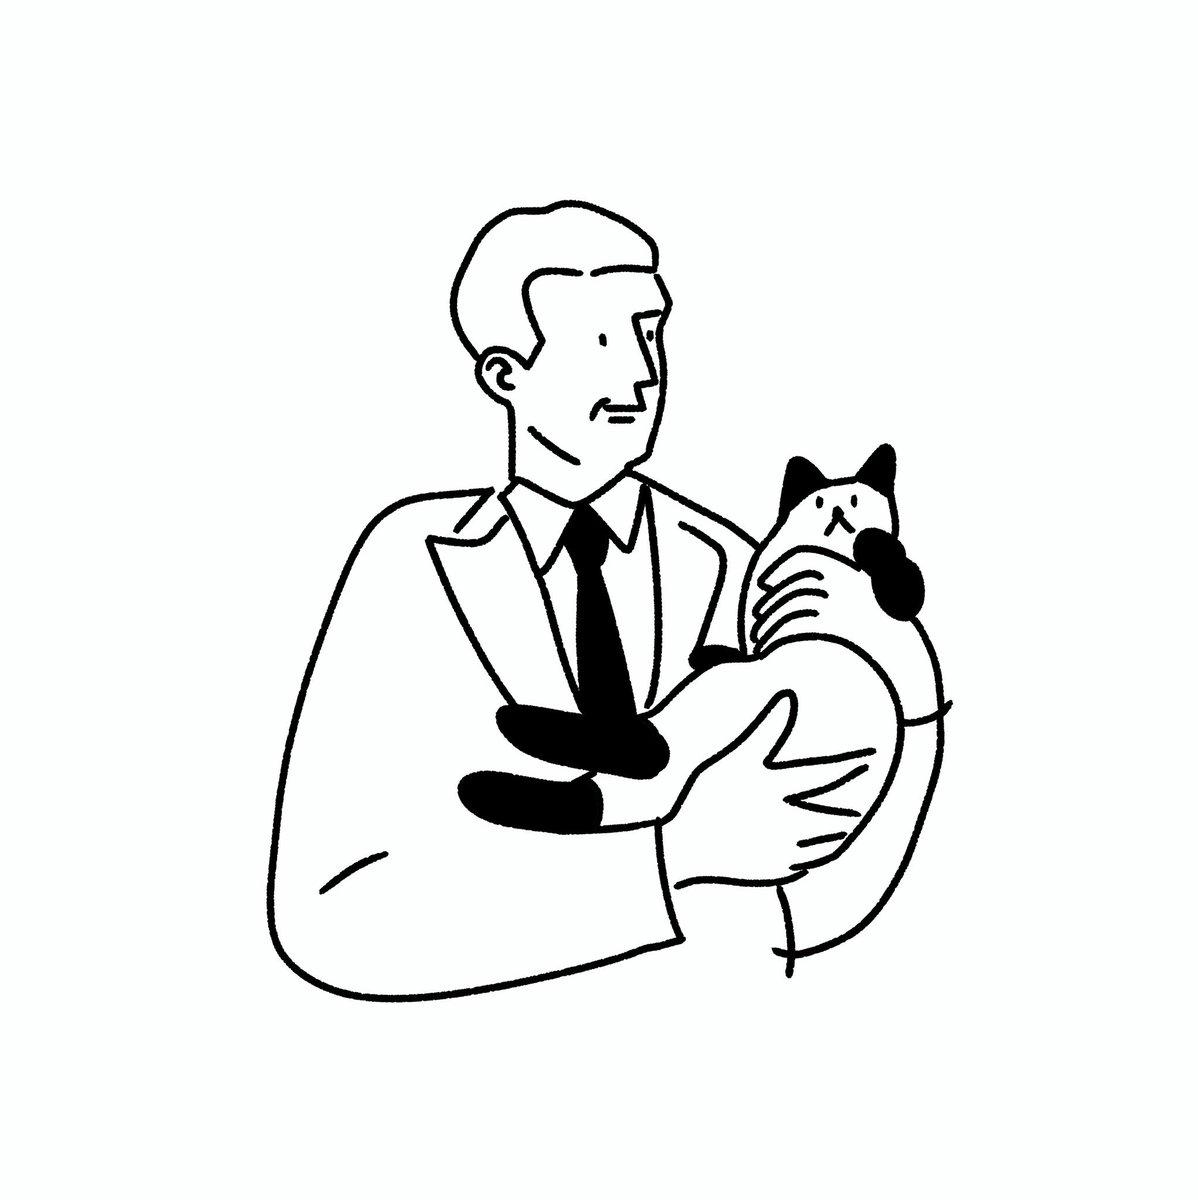 ドミニク Pa Twitter Cat シンプル イラスト イラスト基地 創作 絵 Illust 絵描きさんと繋がりたい イラスト好きな人と繋がりたい 創作クラスタと繋がりたい